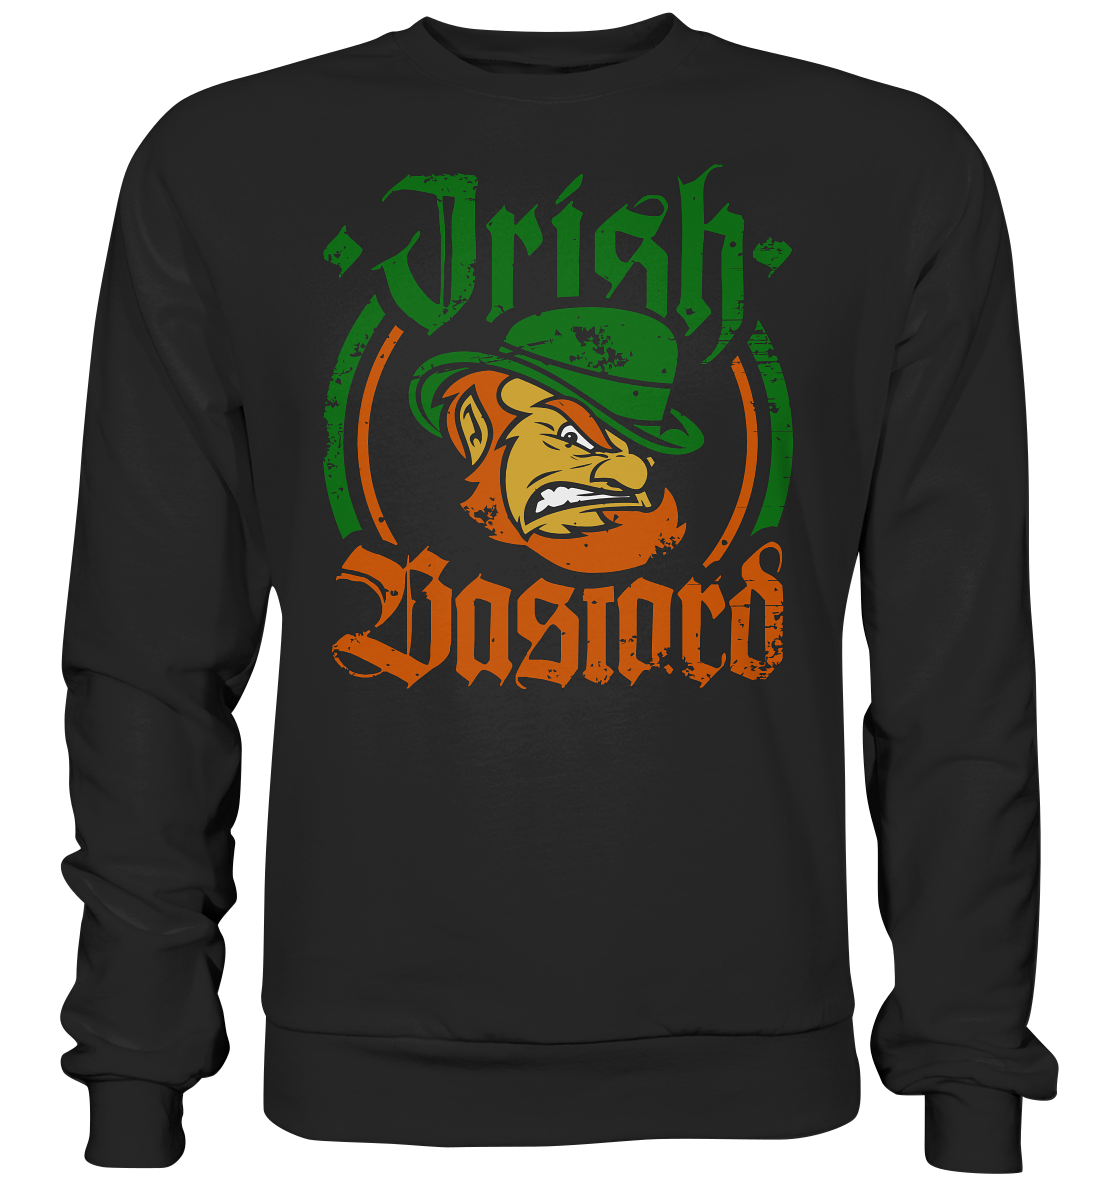 "Irish Bastard" - Basic Sweatshirt